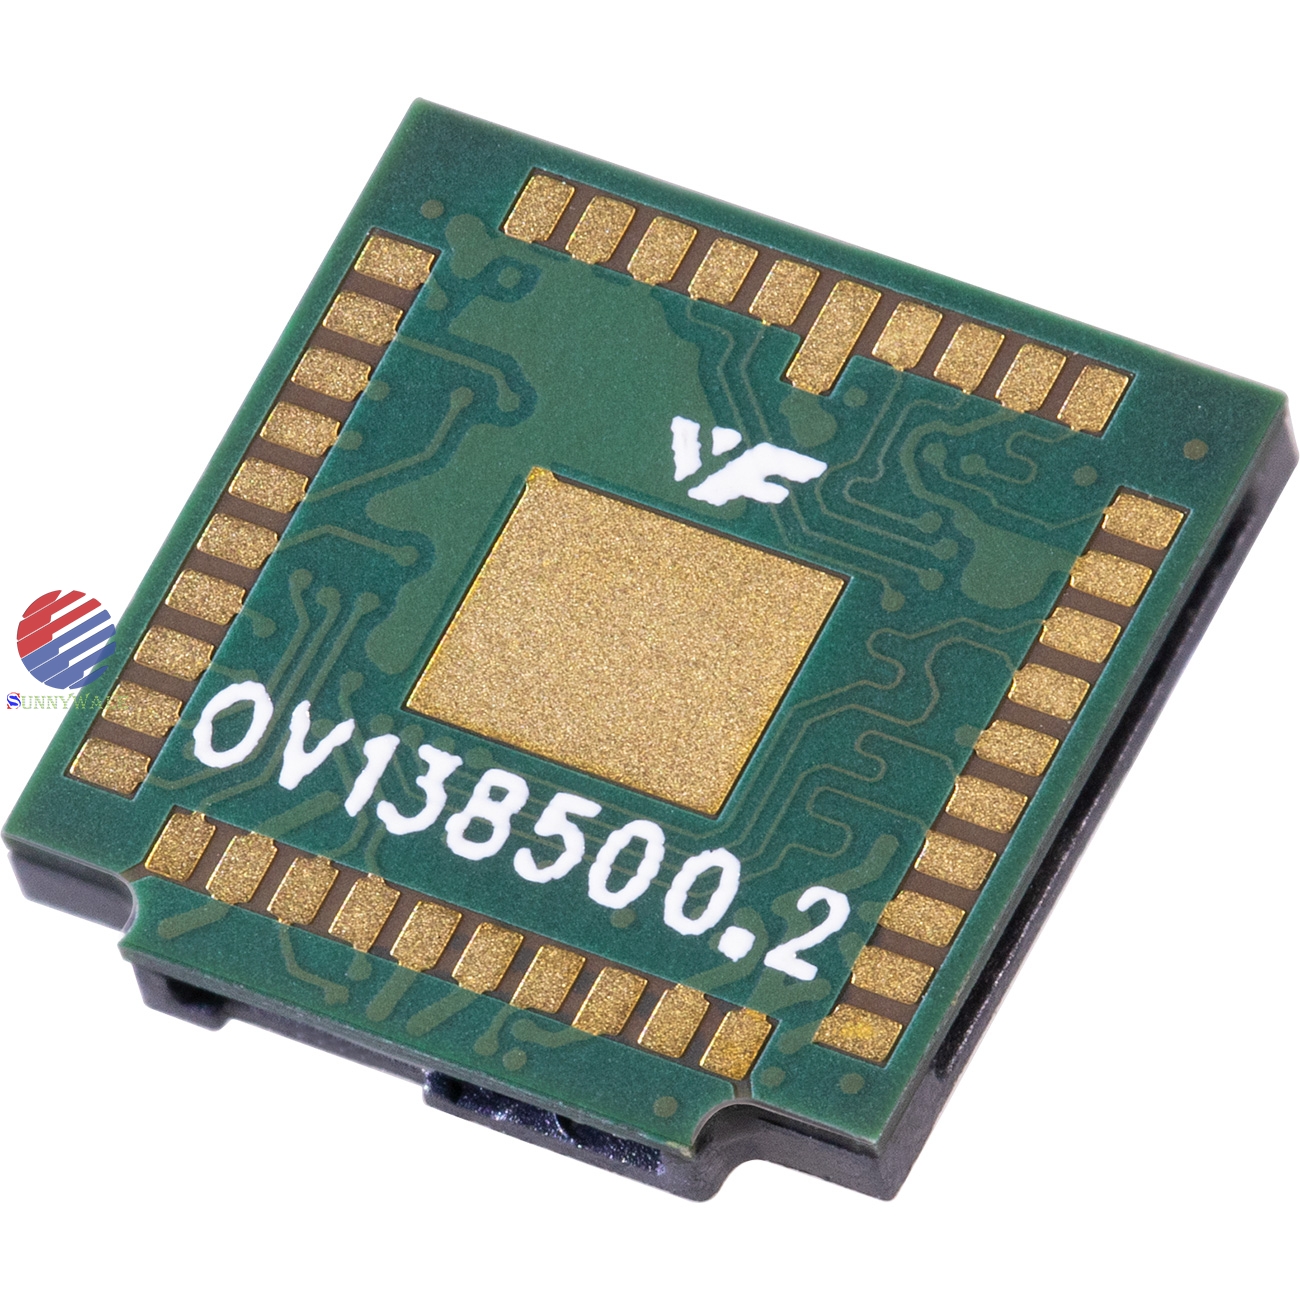 OV13850, OmniVision13MP CMOS image Sensor, 24 frame 10 bit 4 channel MIPI interface image sensor, 13 million pixel mobile camera module sensor chip, OV13MP CMOS image sensor 